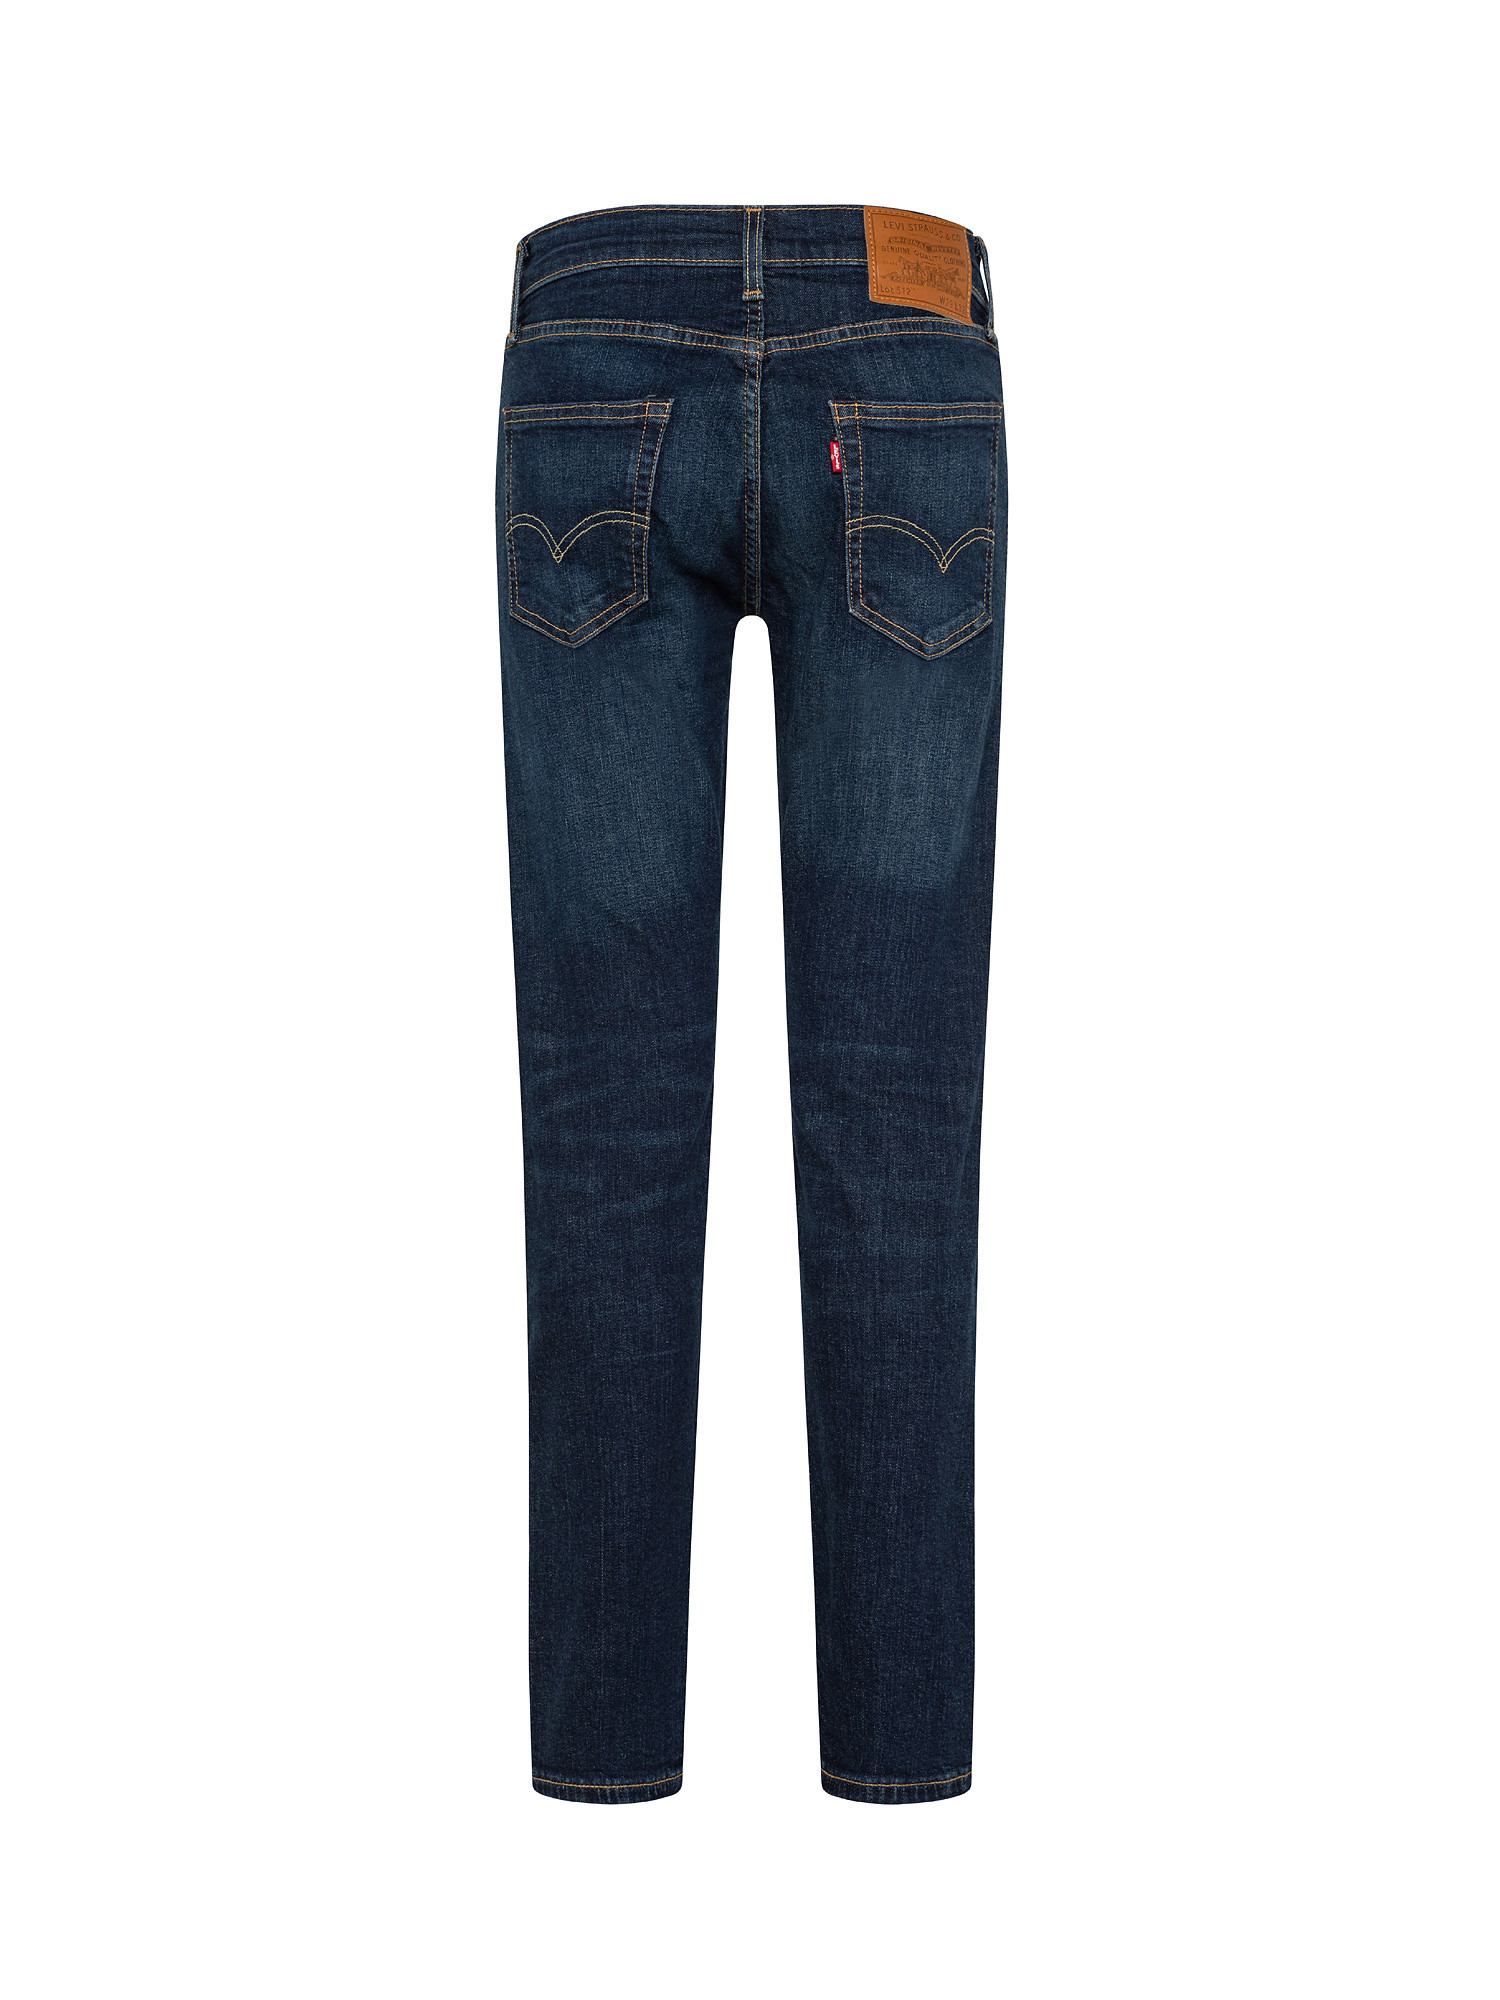 Levi's - Slim fit 512 jeans, Dark Blue, large image number 1